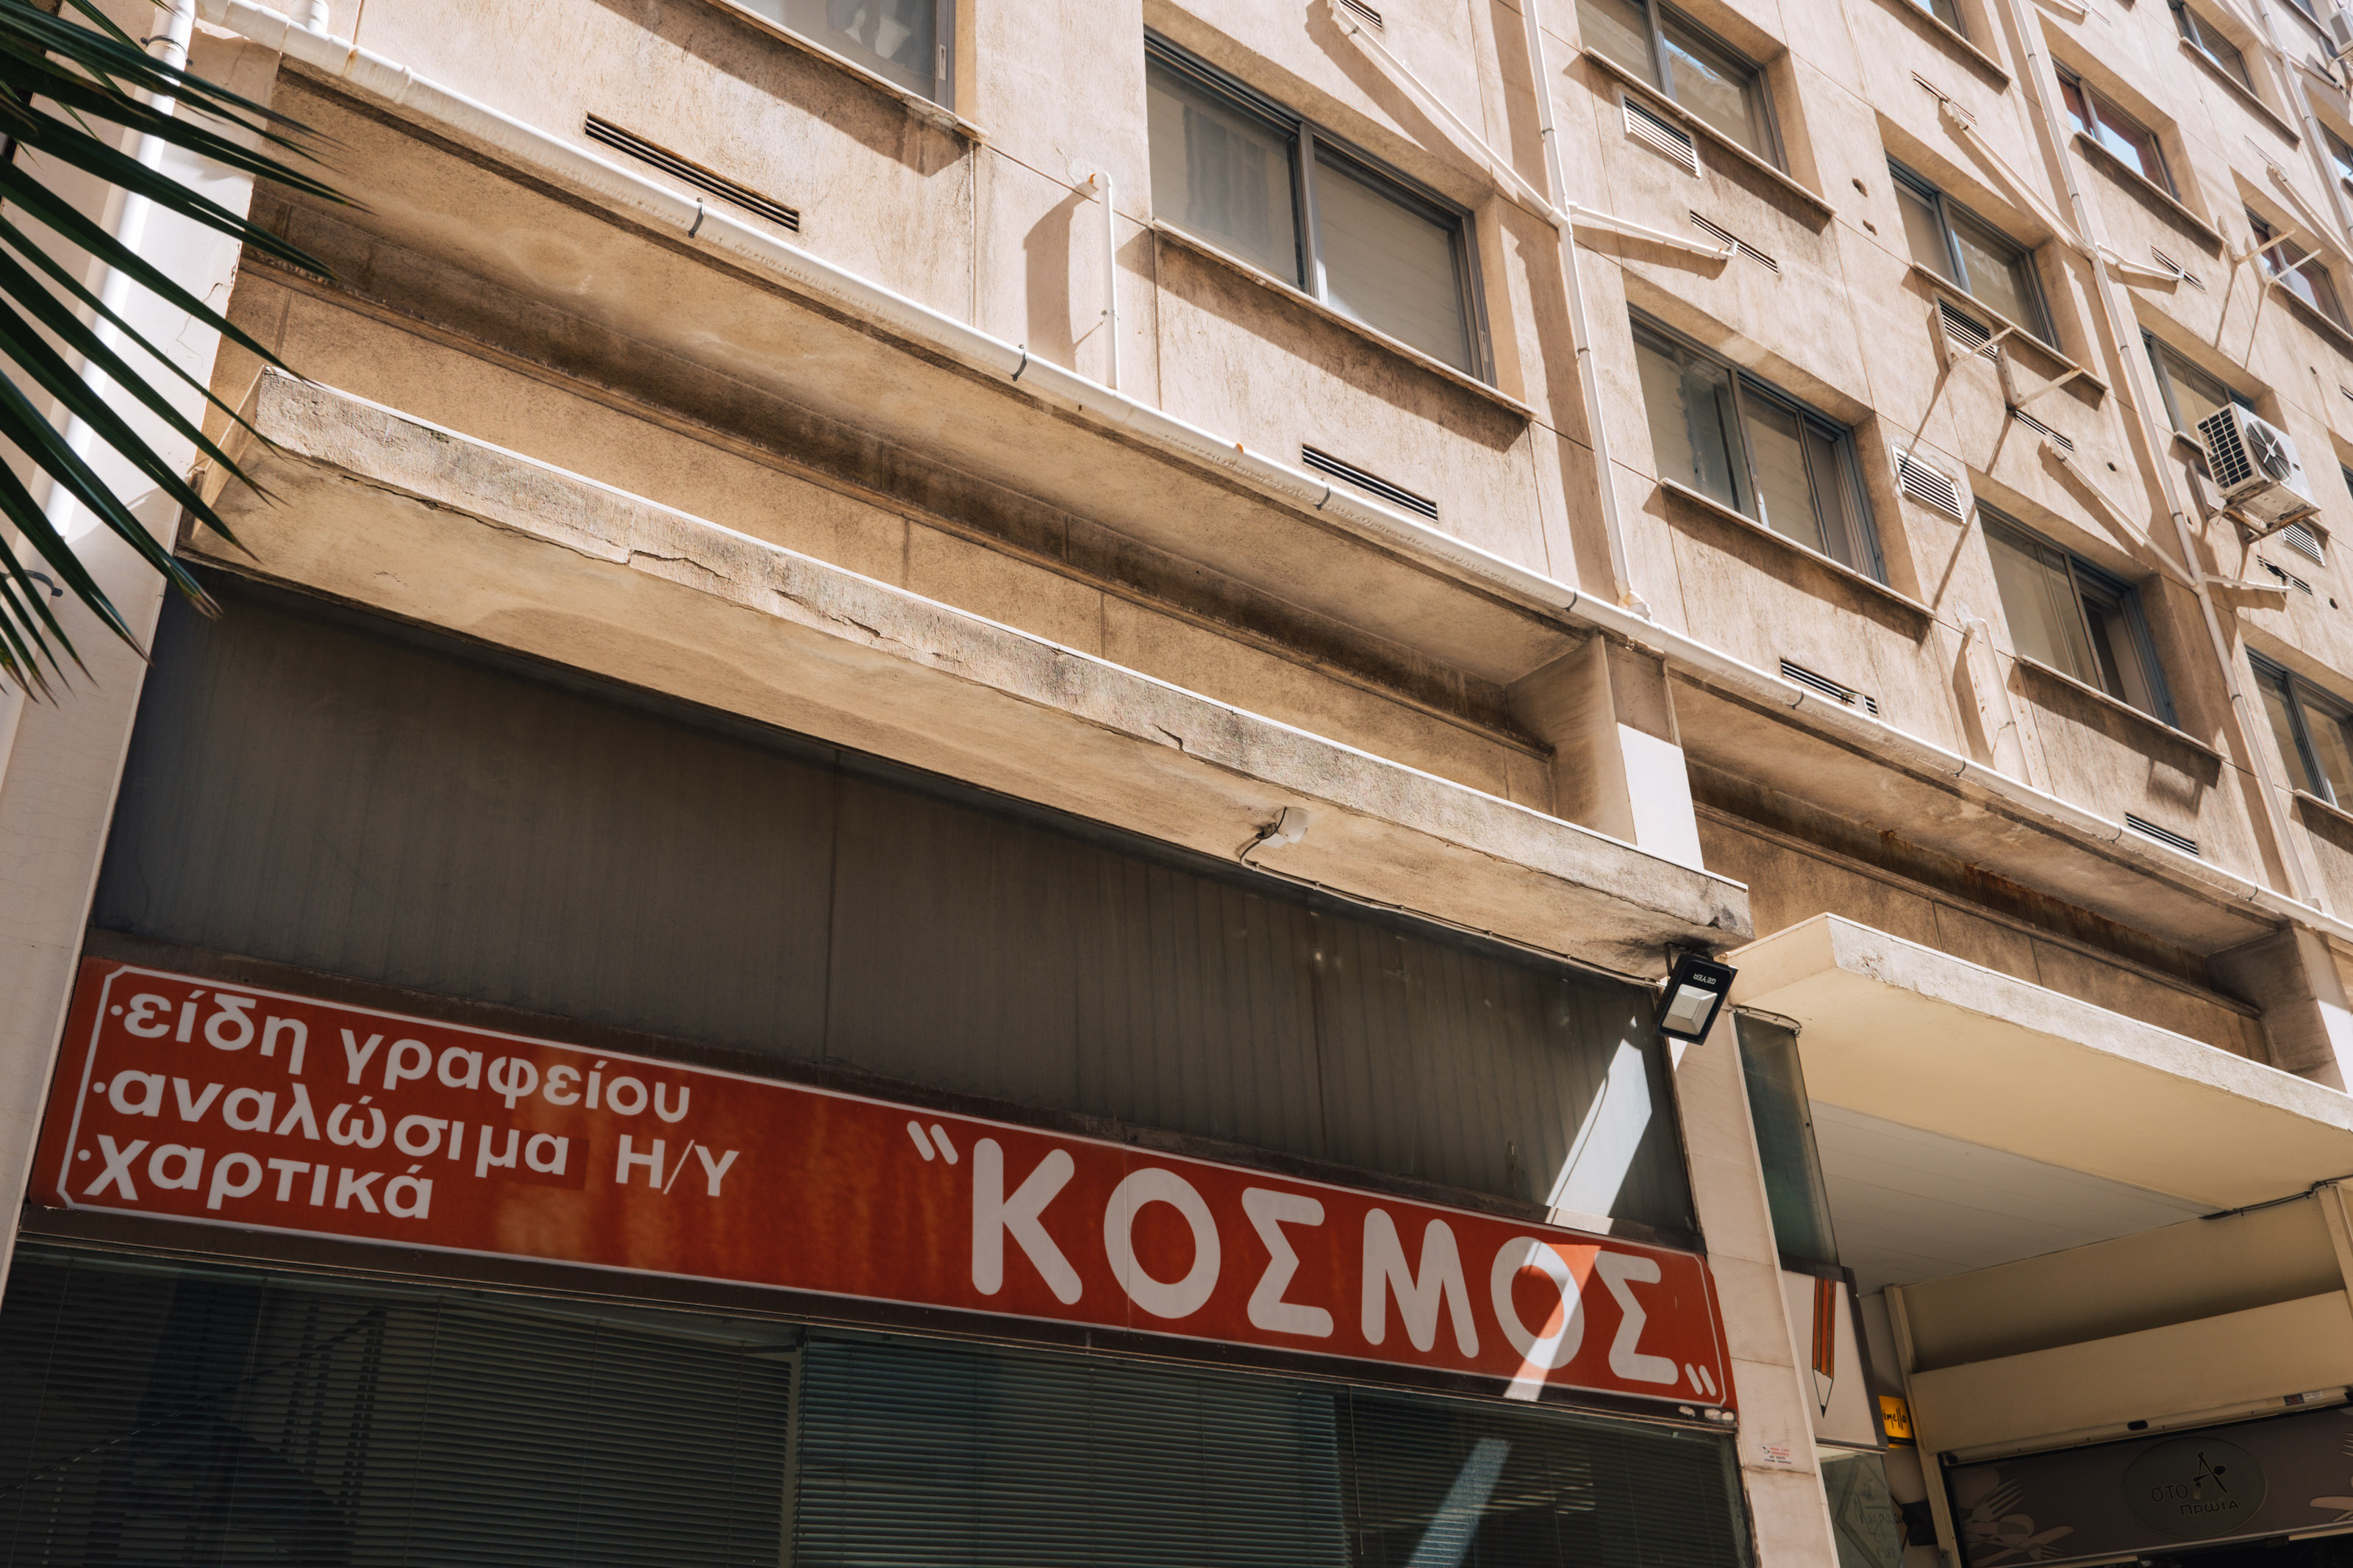 "ΚΟΣΜΟΣ" as in cosmos, world. San Serif madness in Pesmazoglou arcade. | Photo: Georgios Makkas 